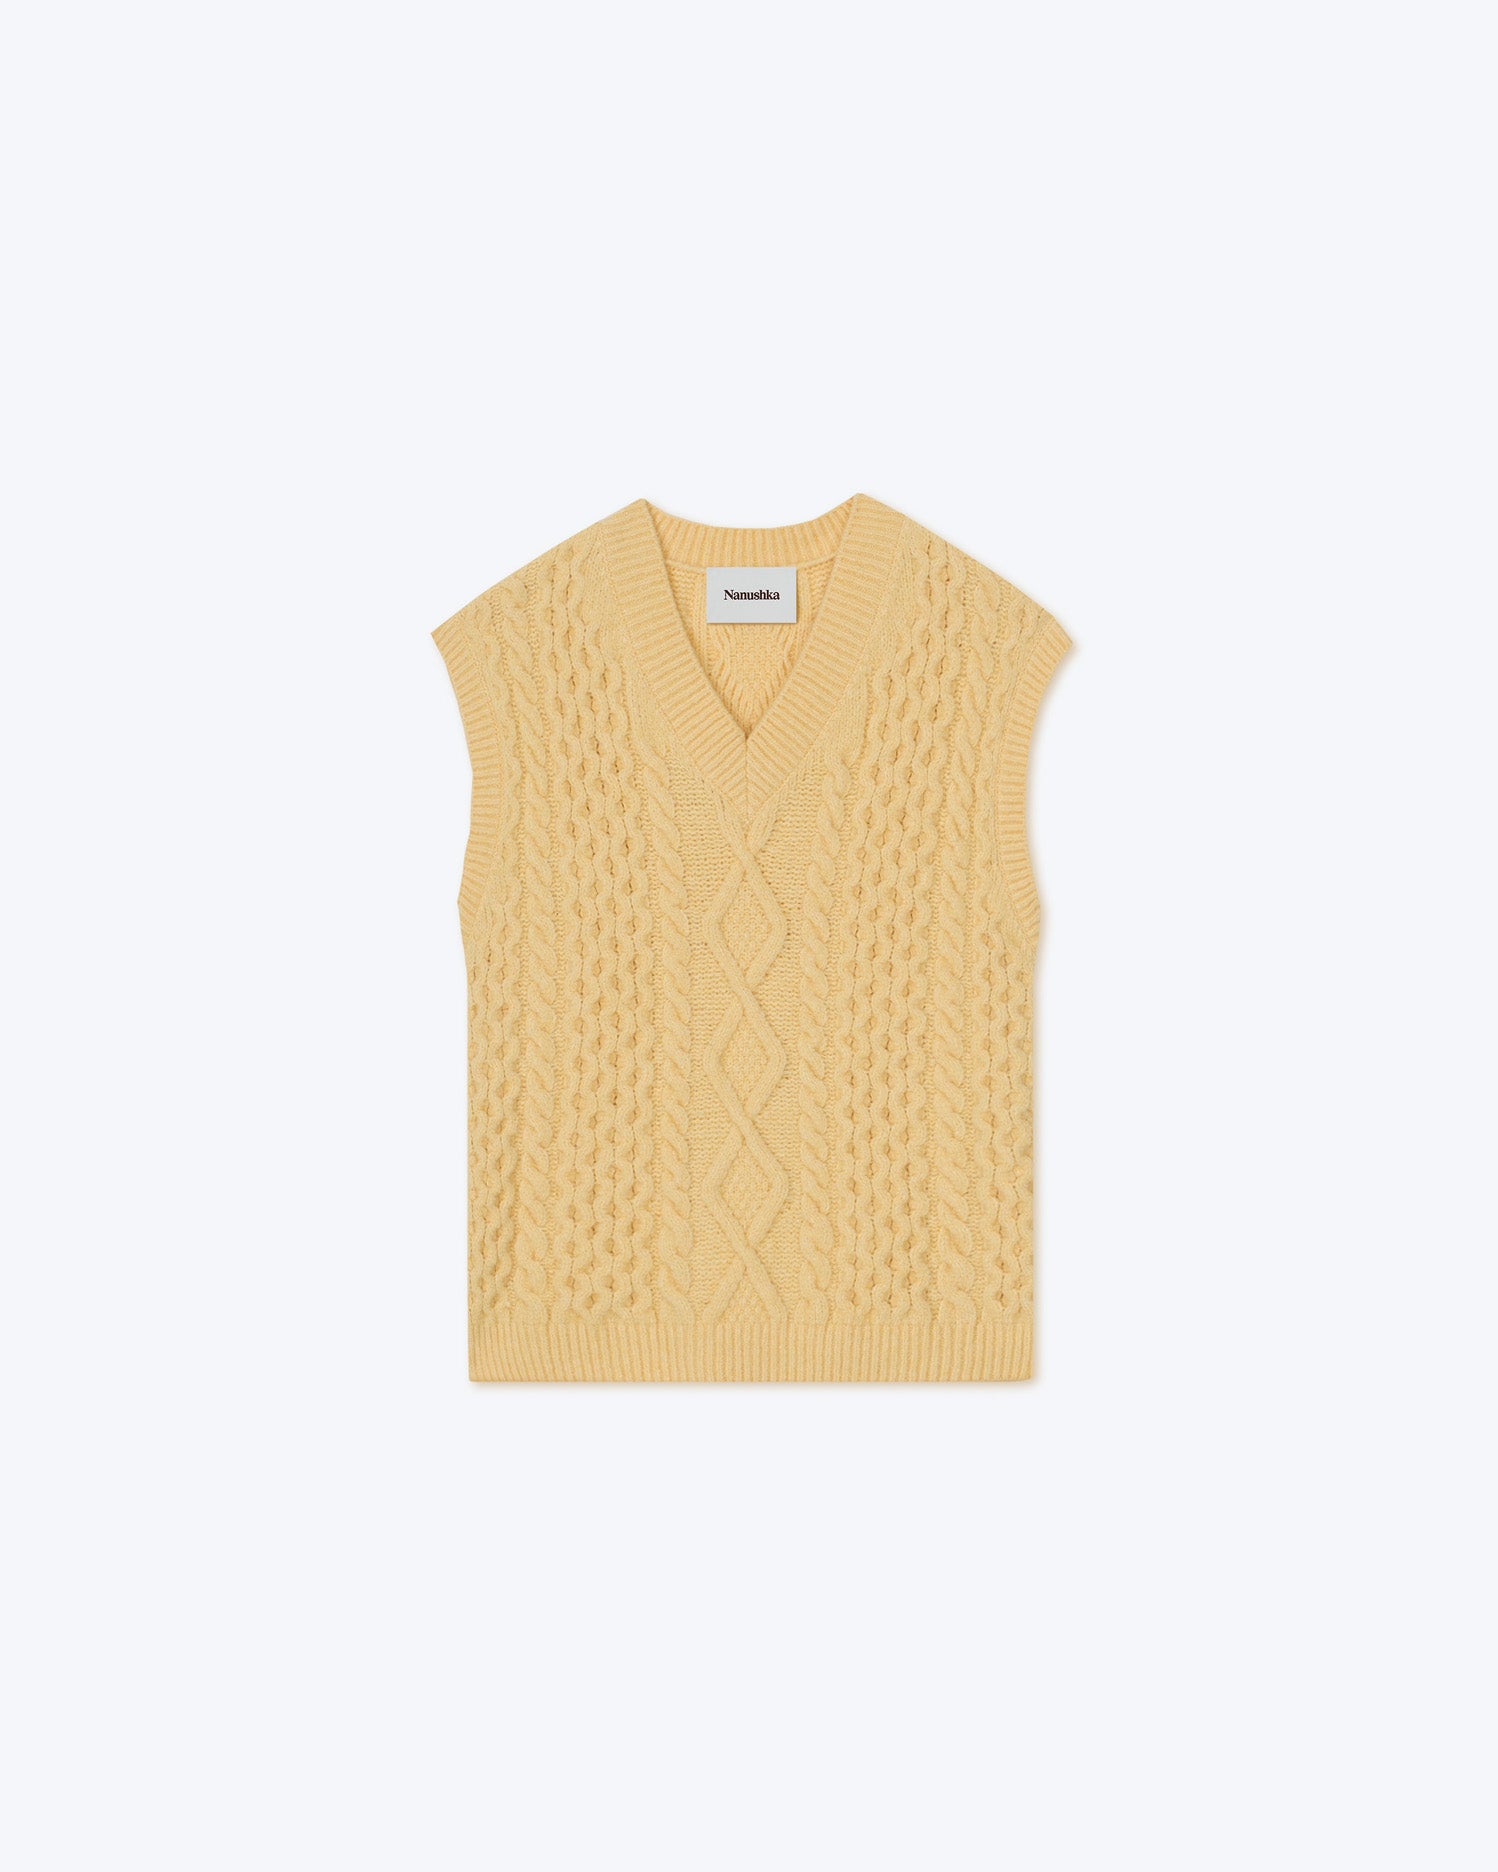 Doan - Sale Cable Knit Vest - Pale Yellow